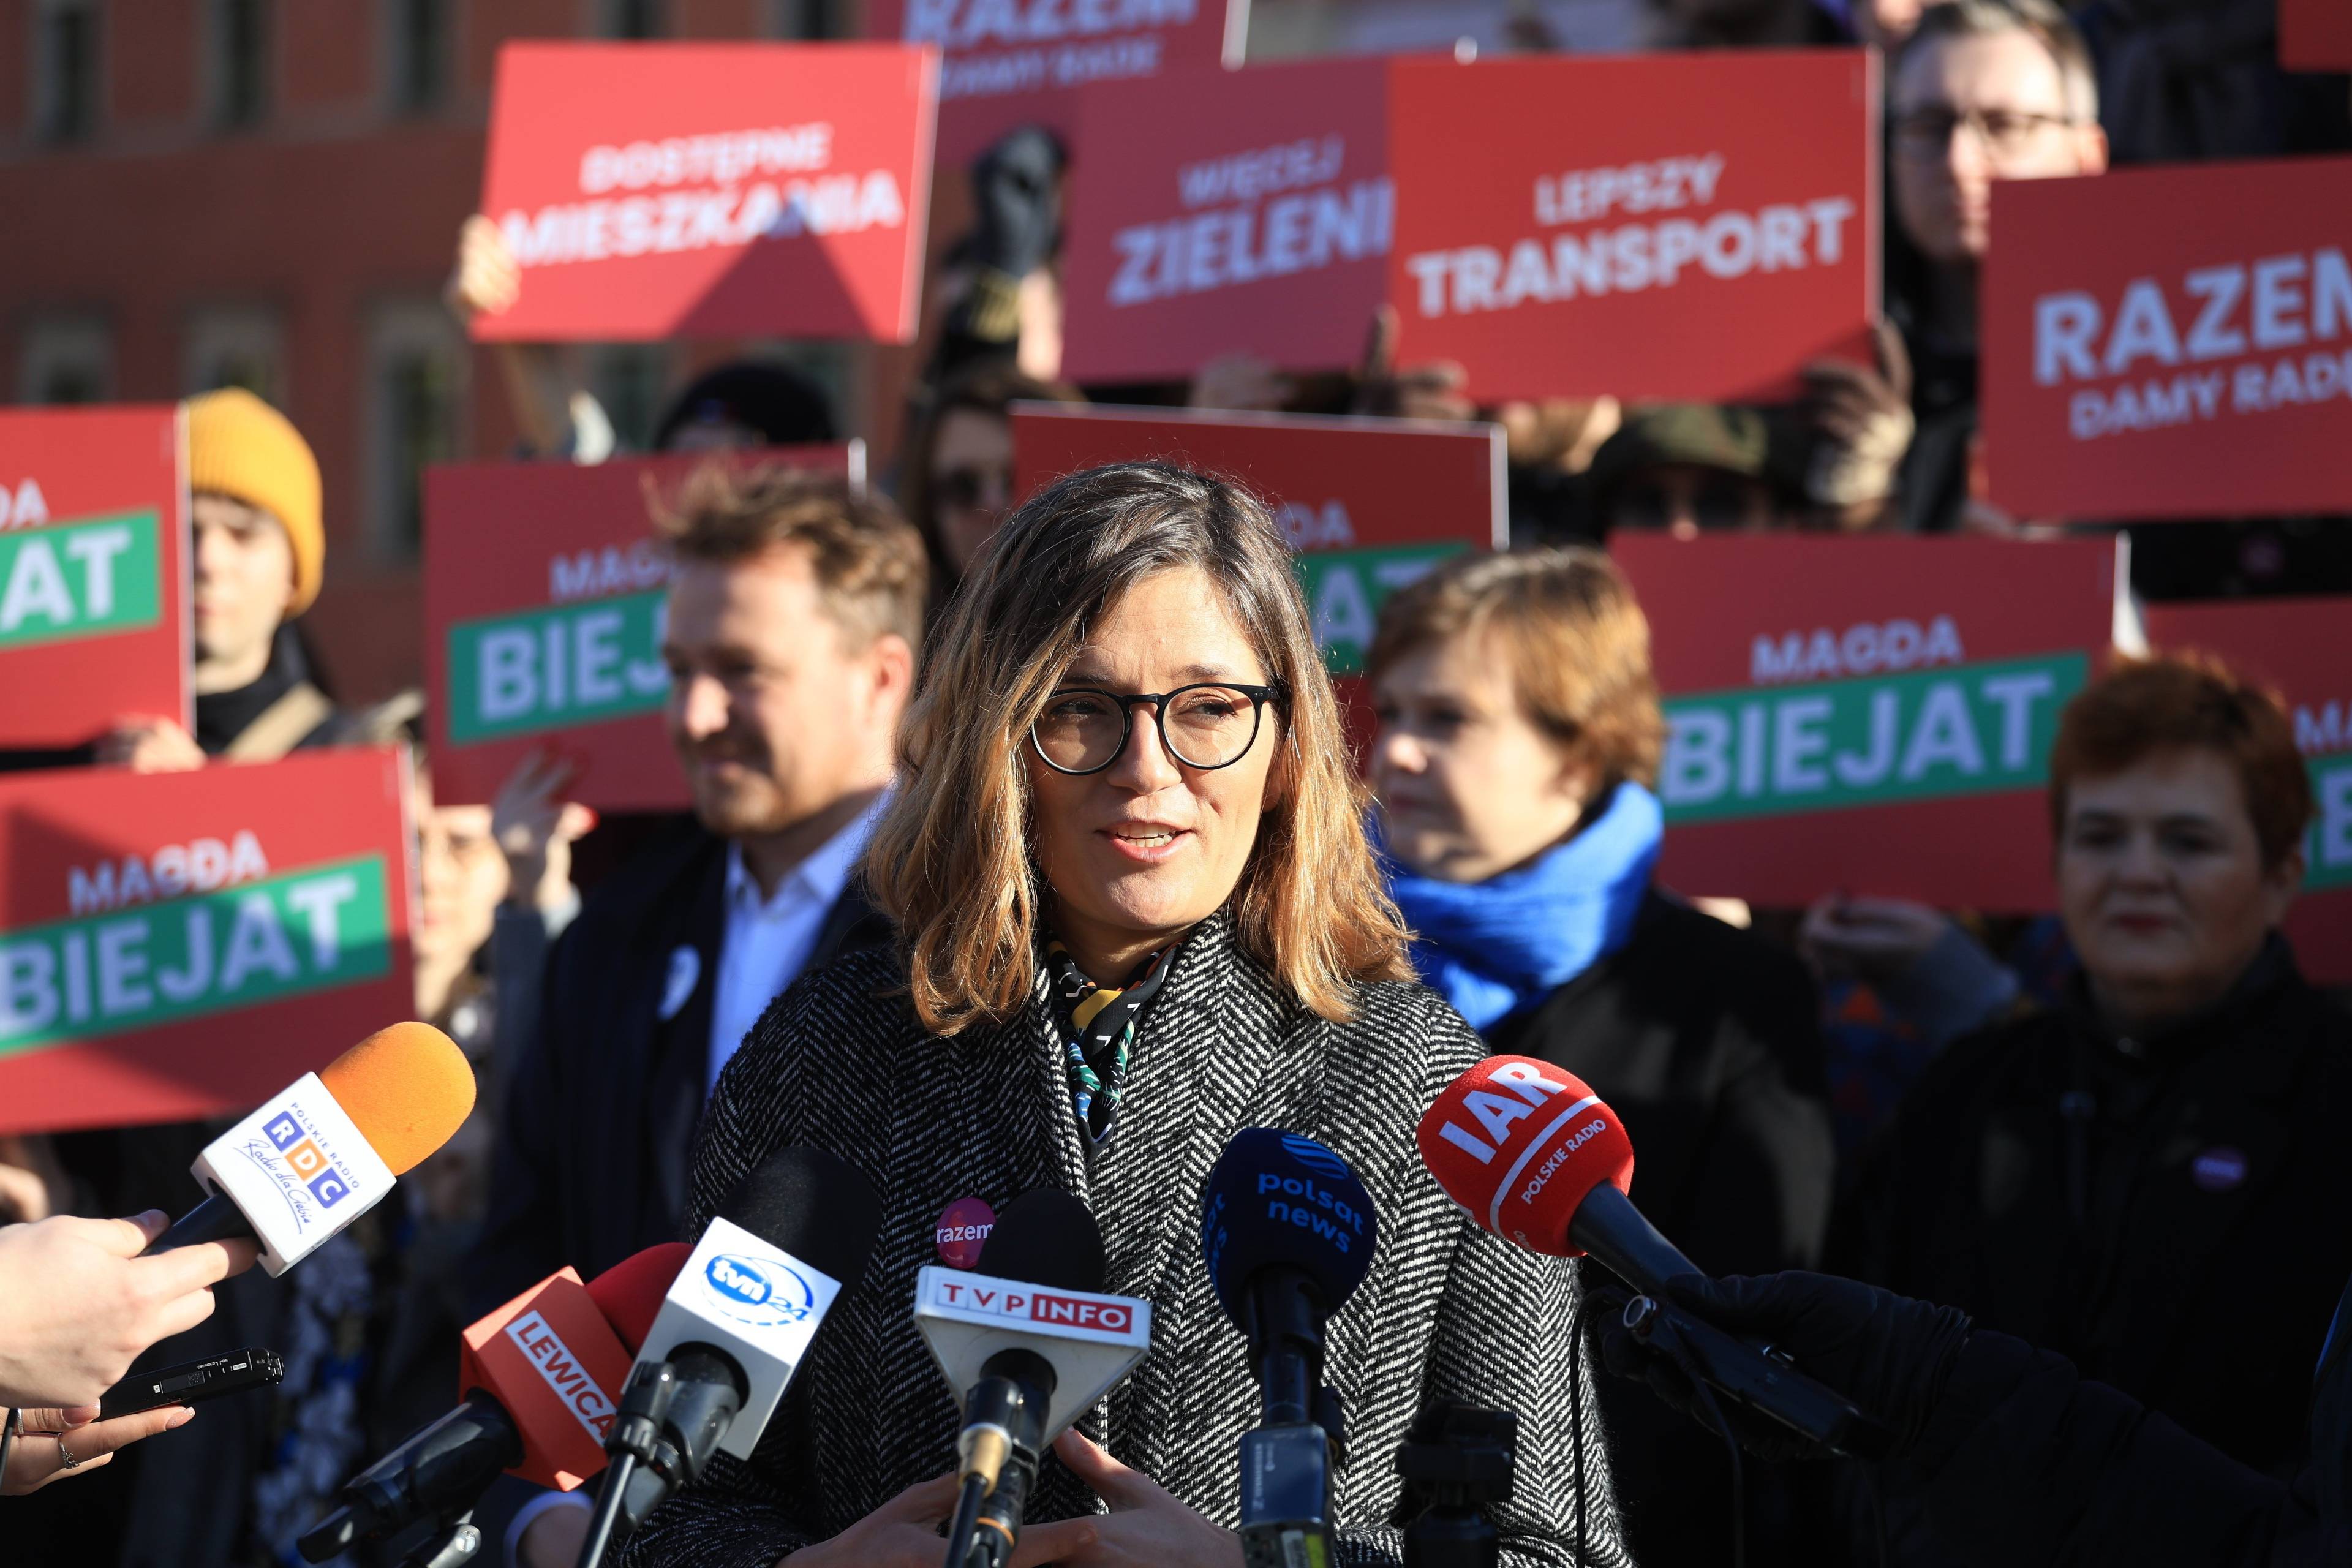 Magdalena Biejat przed mikrofonami, na tle plakatów wyborczych